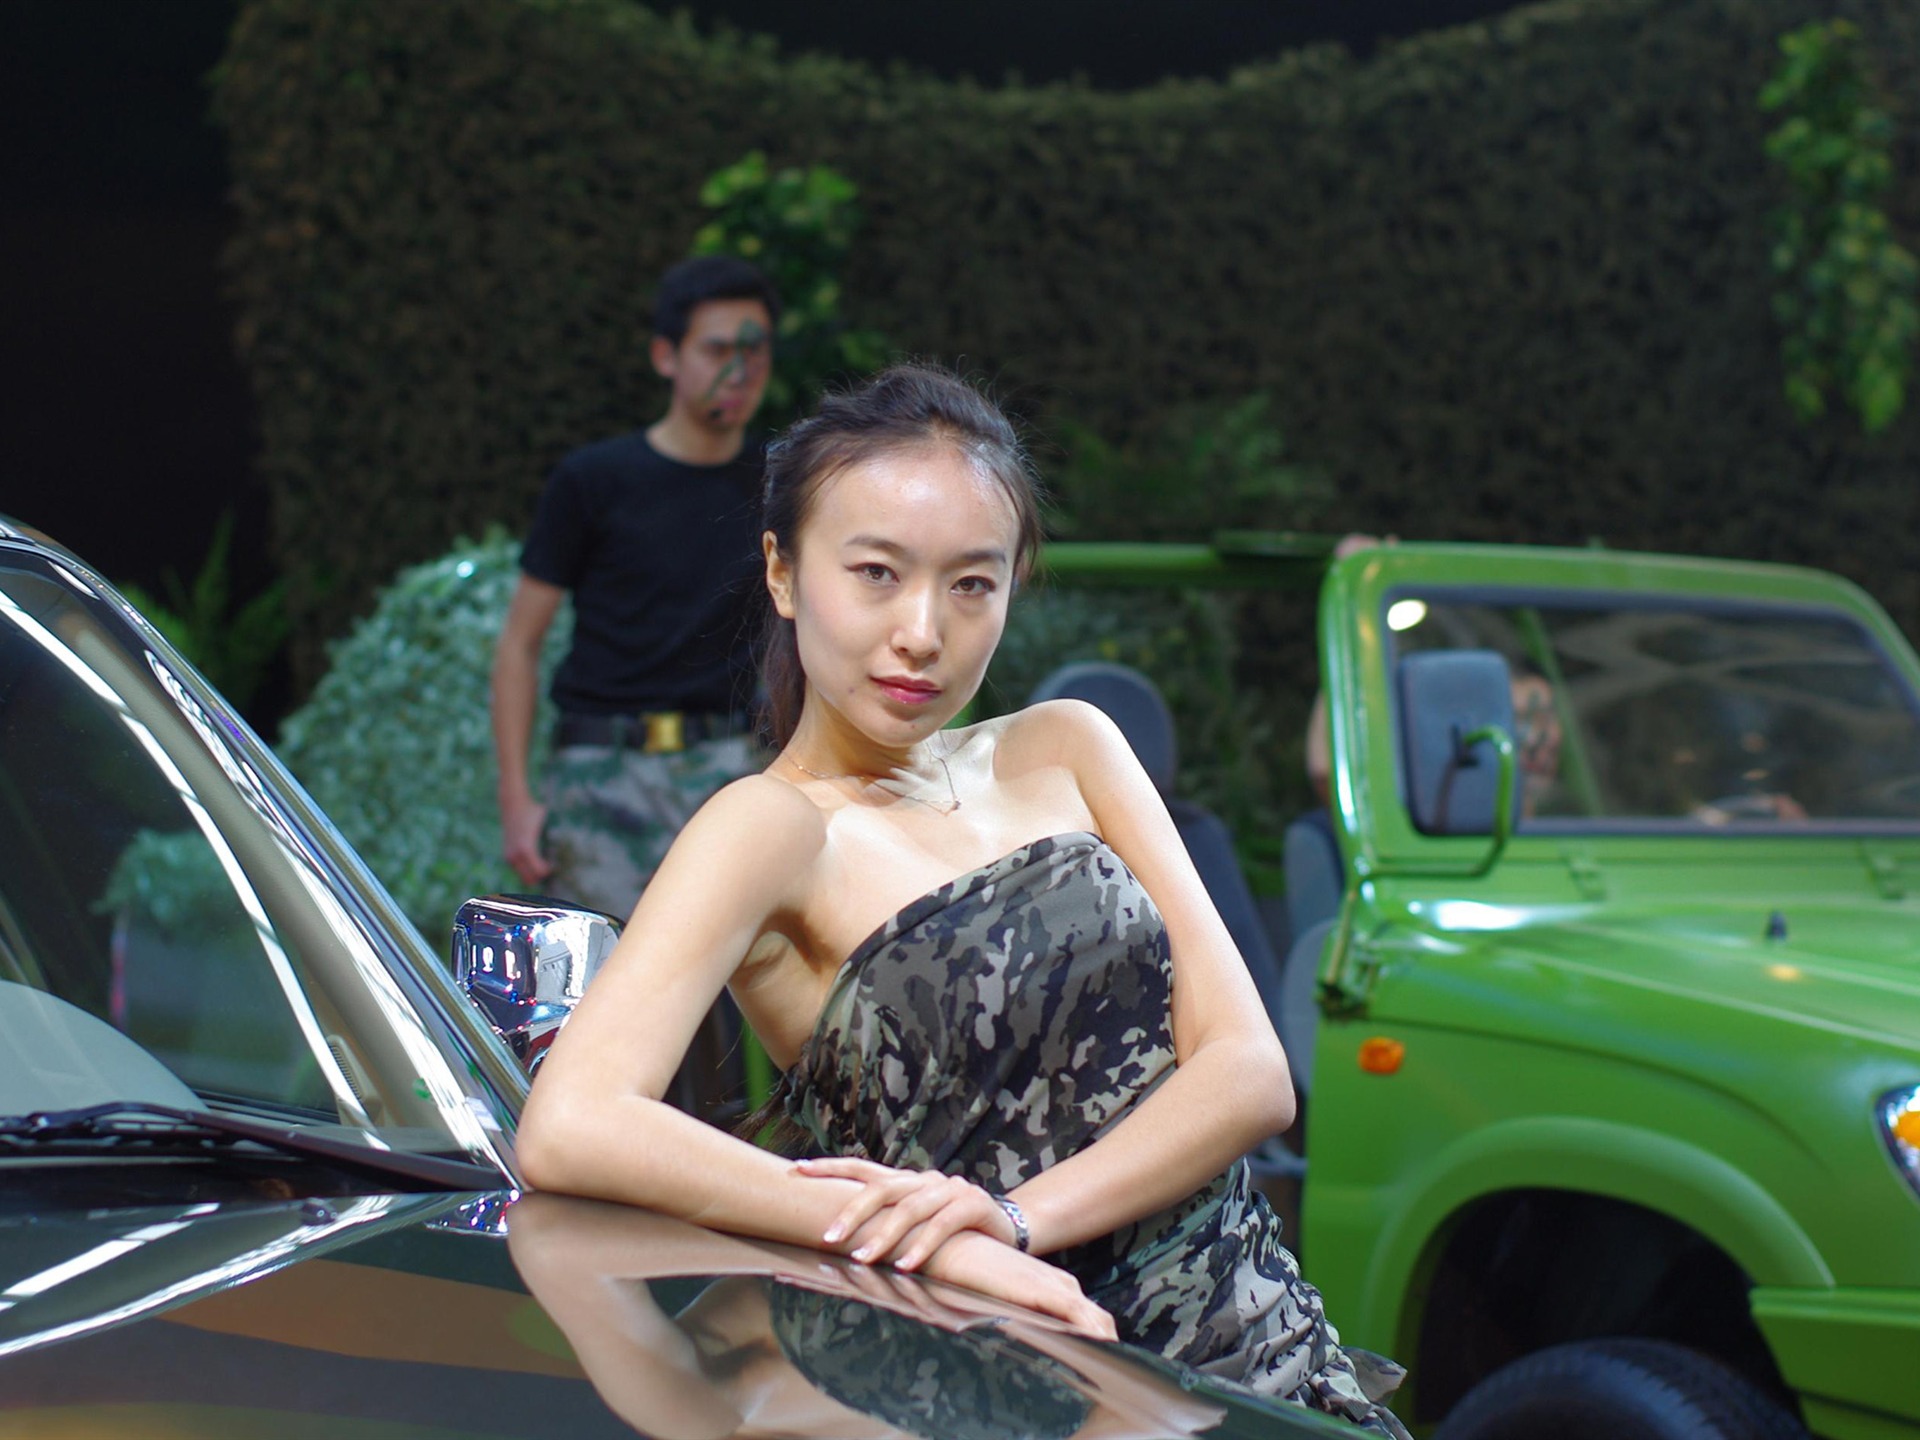 Beijing 2010 Salon de l'auto de beauté (michael68 œuvres) #14 - 1920x1440